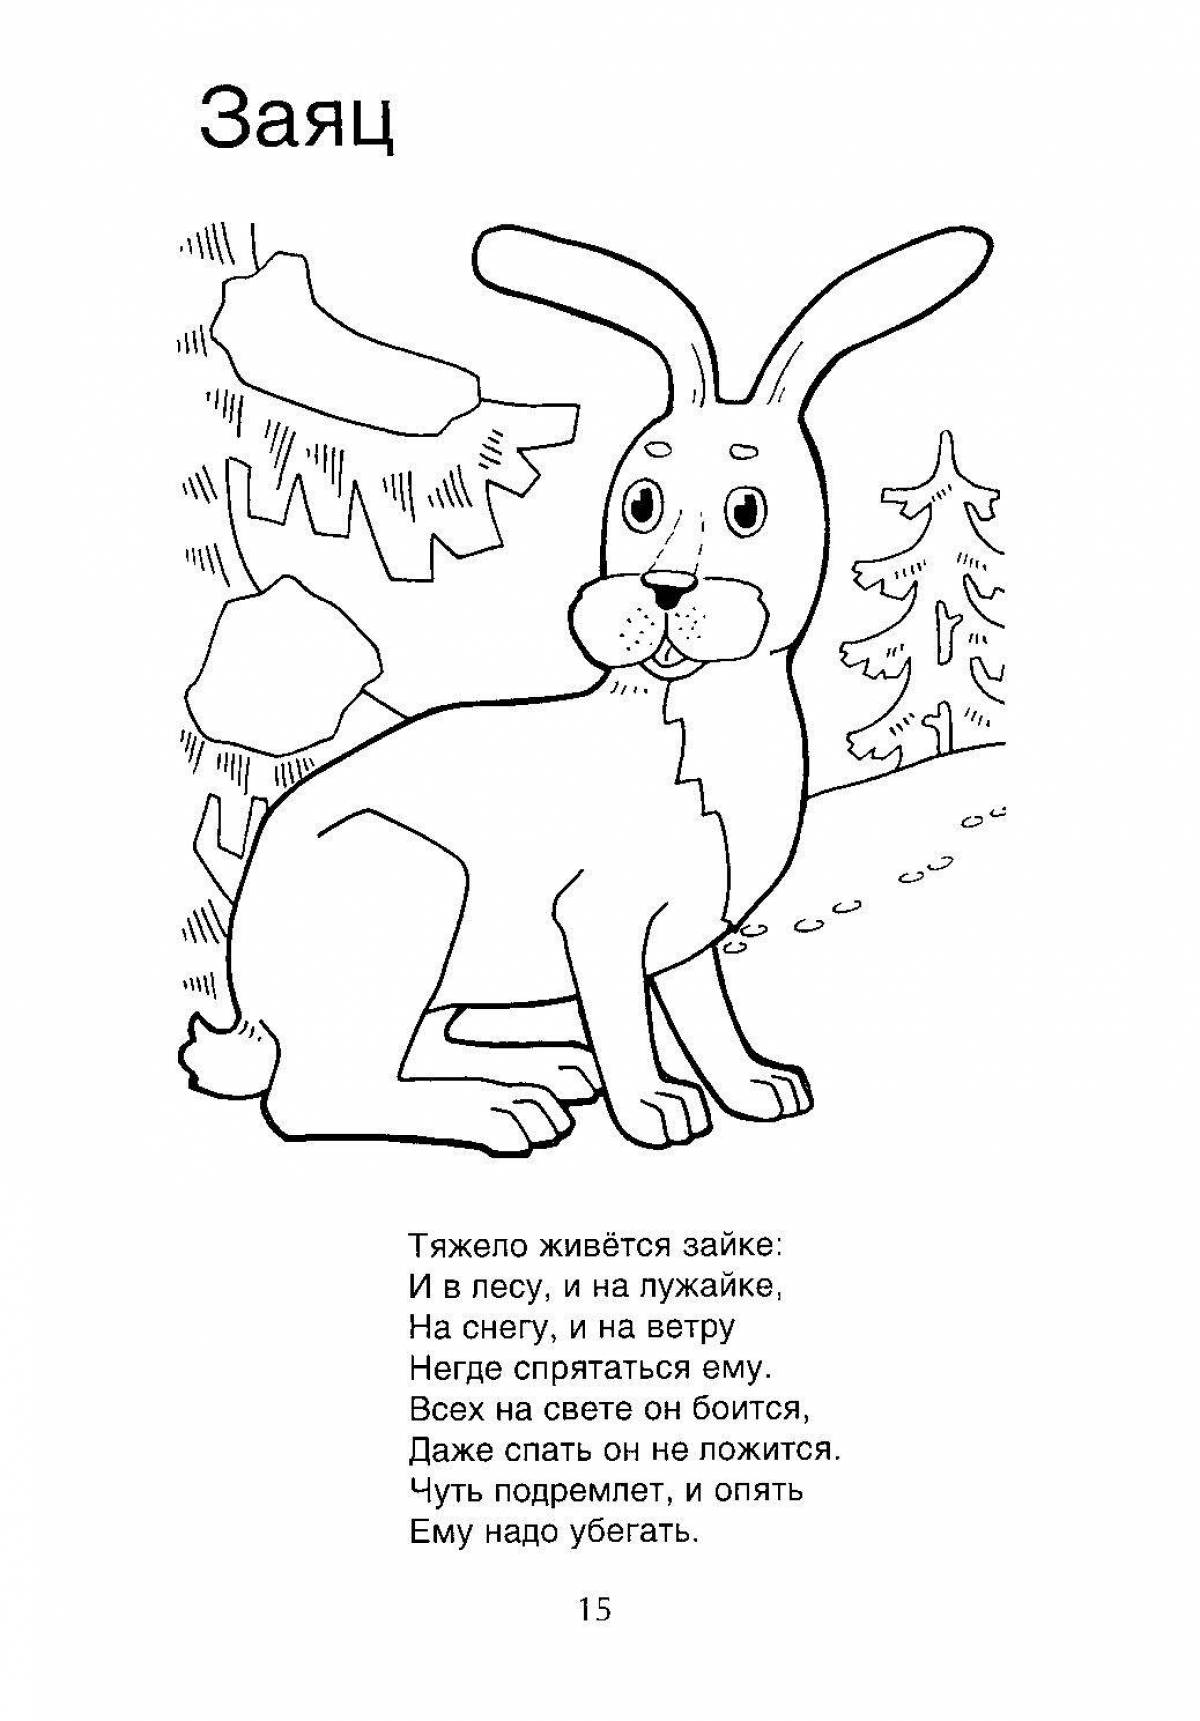 Magic coloring rabbit in winter